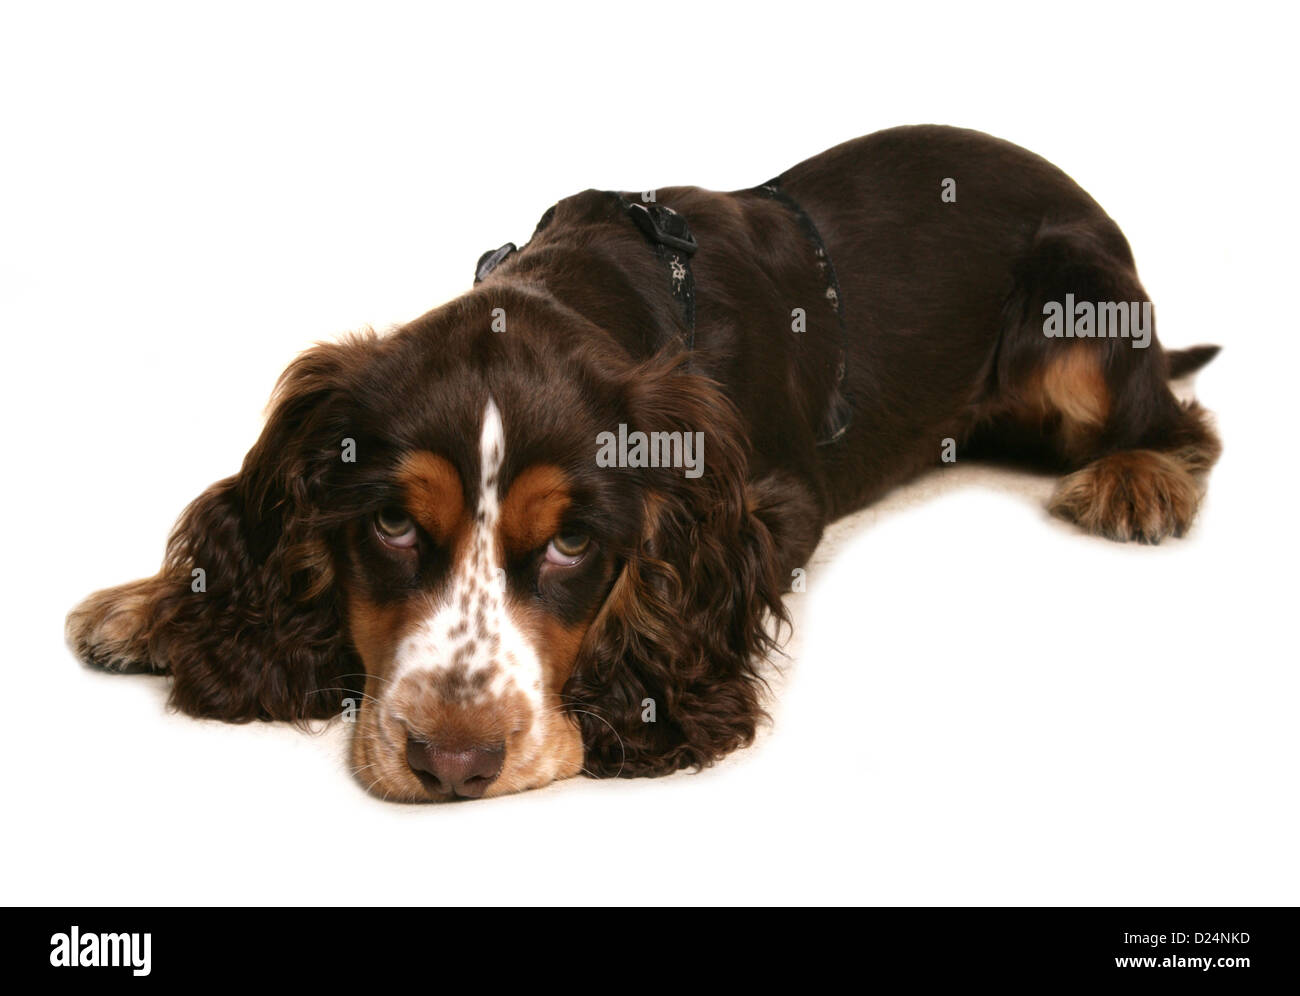 Inländische Hund, Cocker Spaniel, Welpe, Verlegung, tragen Gurt  Stockfotografie - Alamy